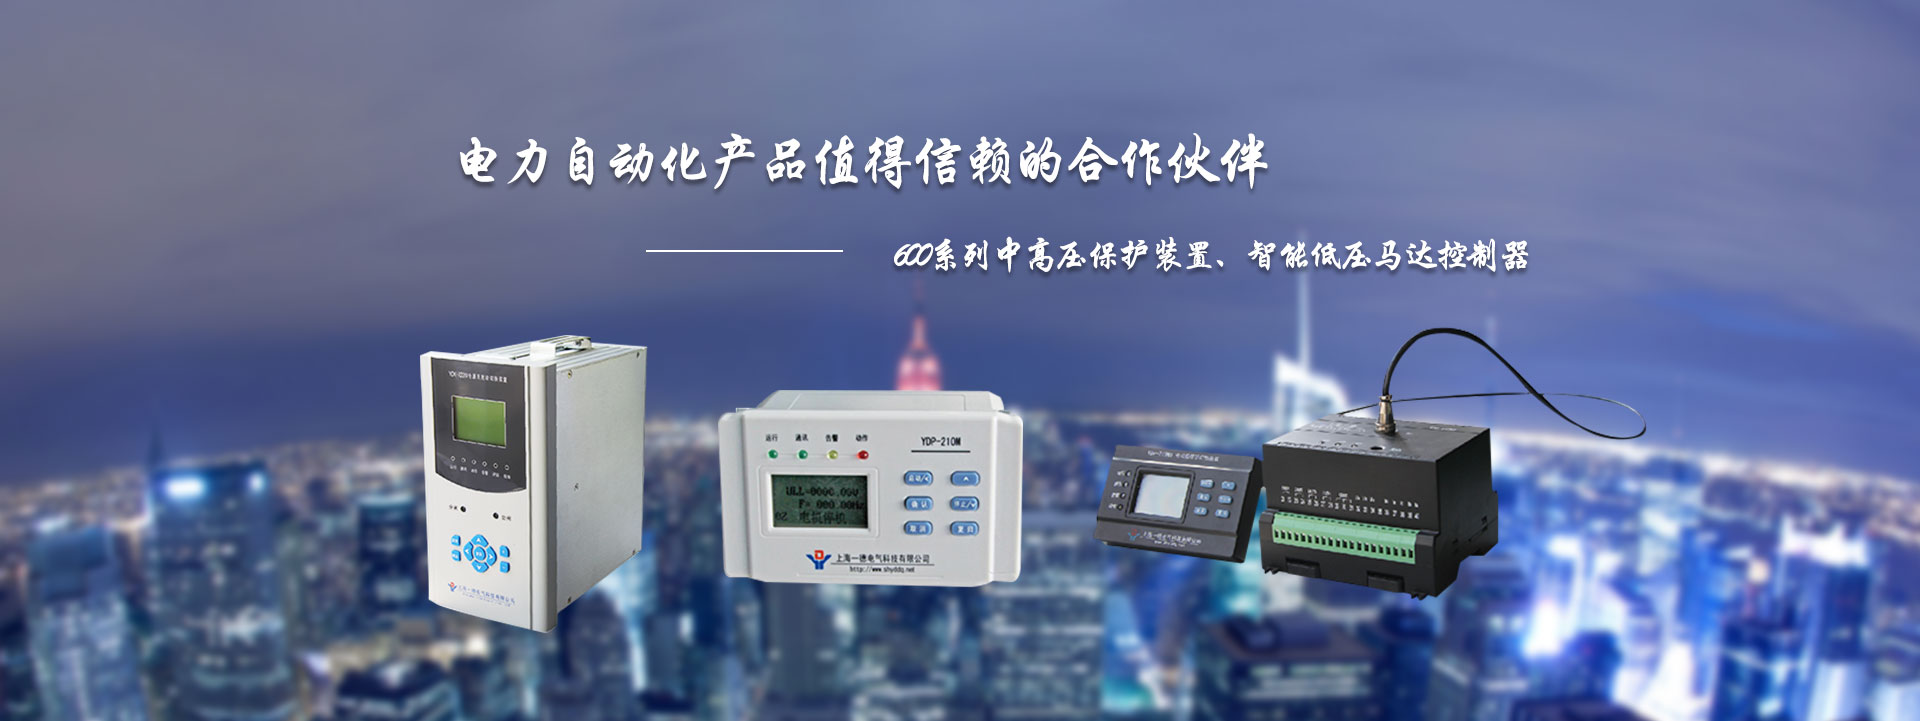 上海一德电气科技有限公司